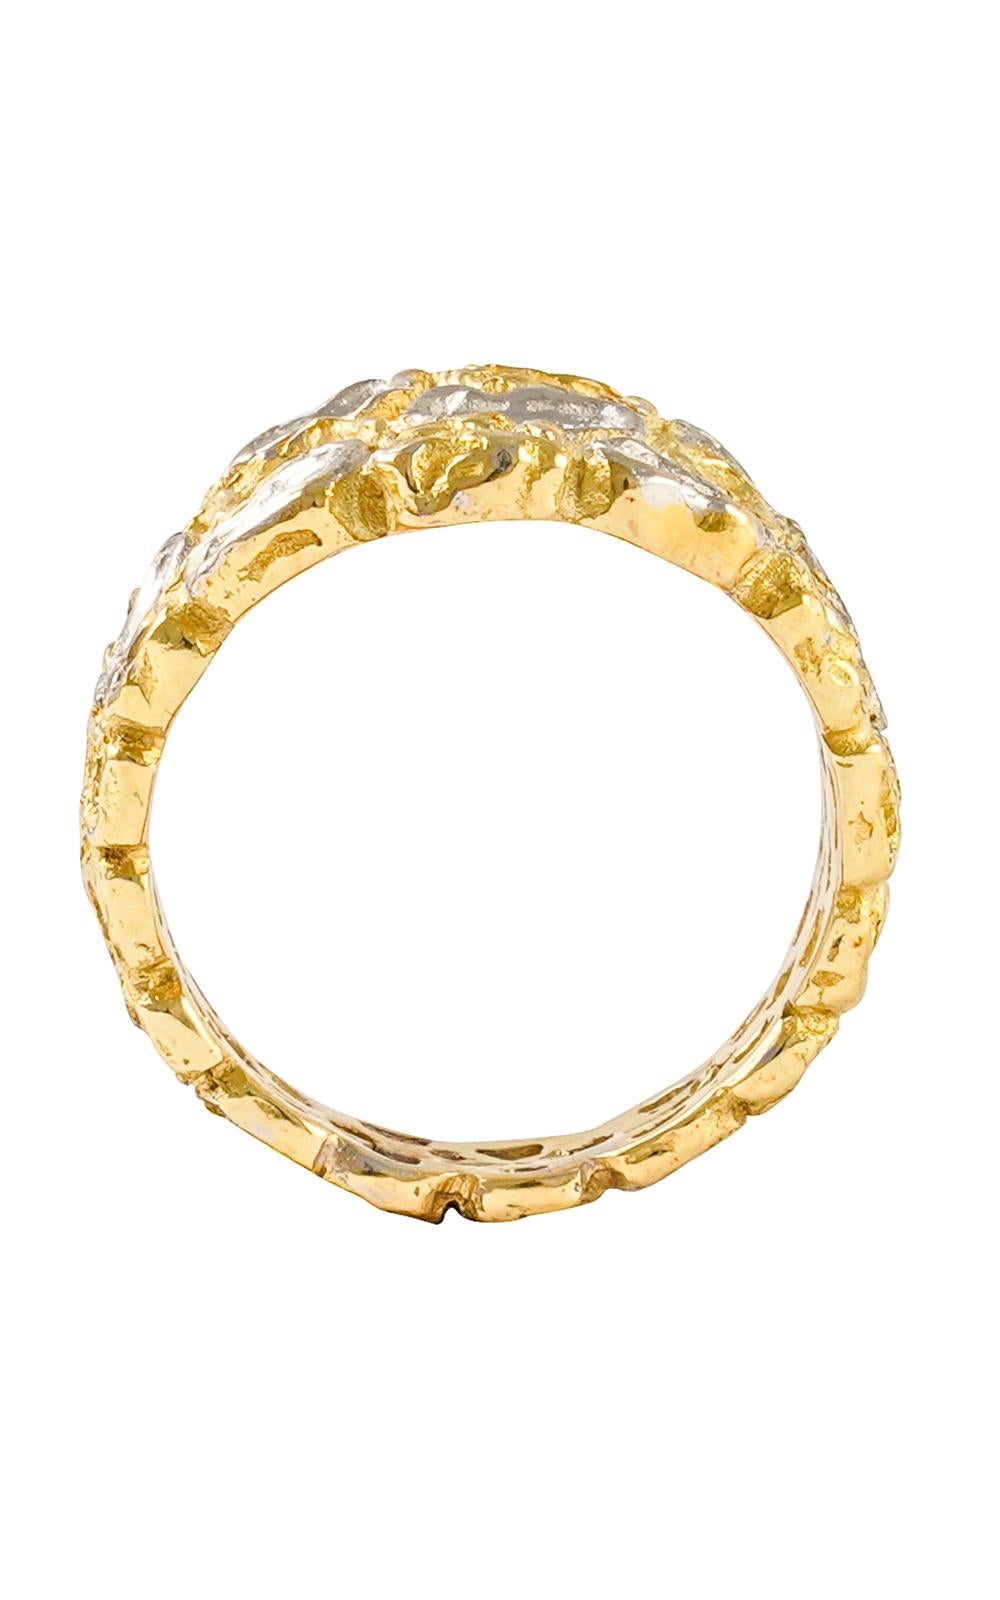 Schöner Ring aus 18-karätigem Gelbgold mit Diamanten im Pflaster.  Fashion Band Ring, handgefertigt im Wachsausschmelzverfahren.

Der Wachsausschmelzguss, eine der ältesten Techniken zur Herstellung von Schmuck, bildet die Grundlage für die